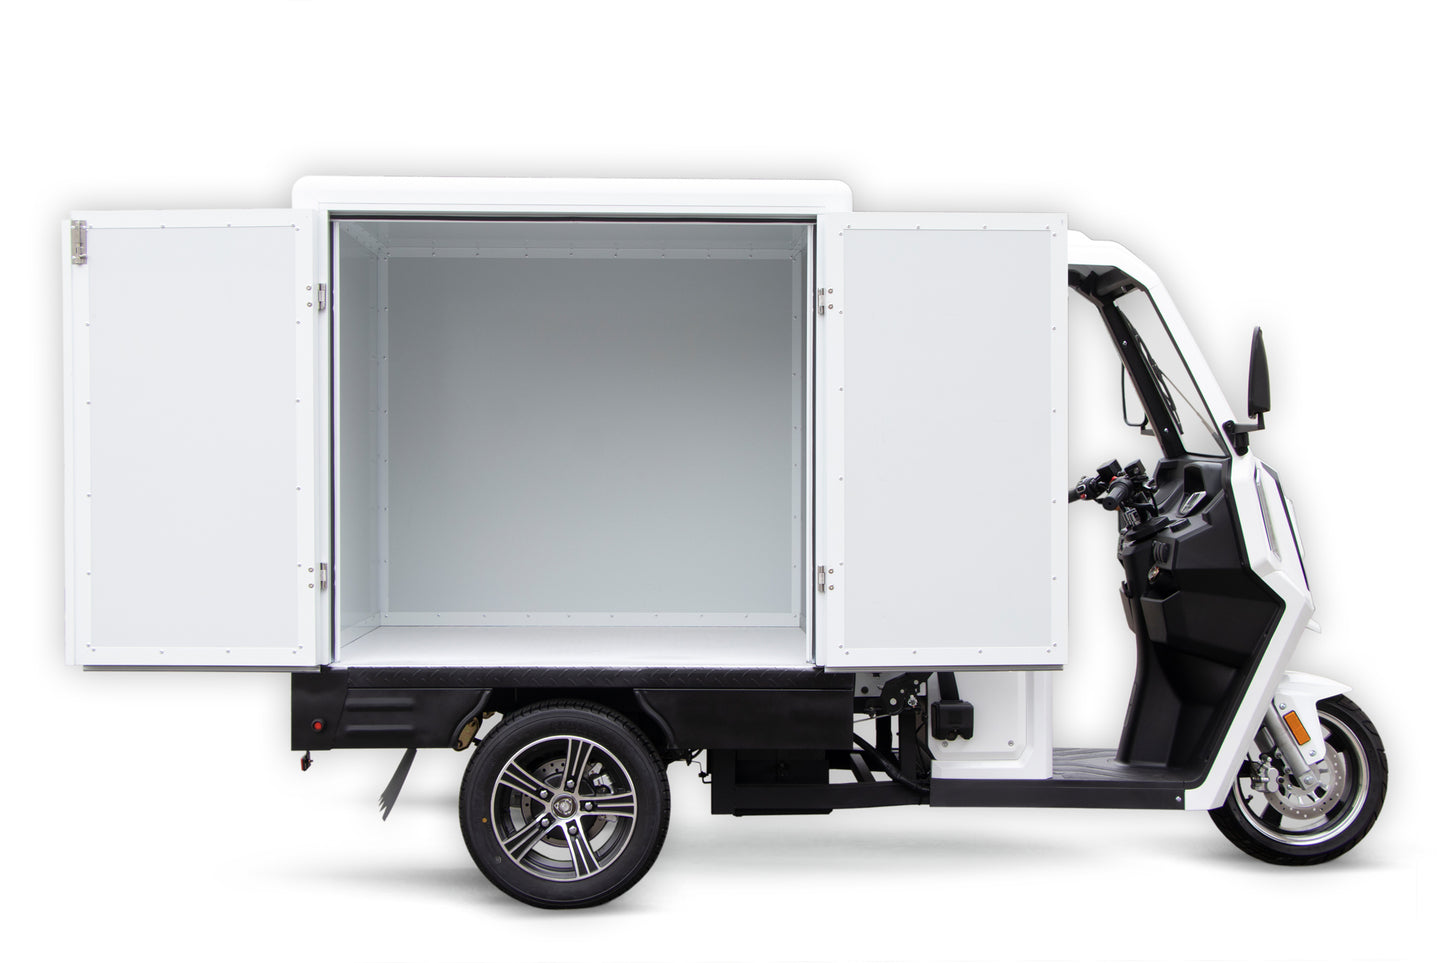 LiFR City Truck XC V9 3,1kW Cargo Box